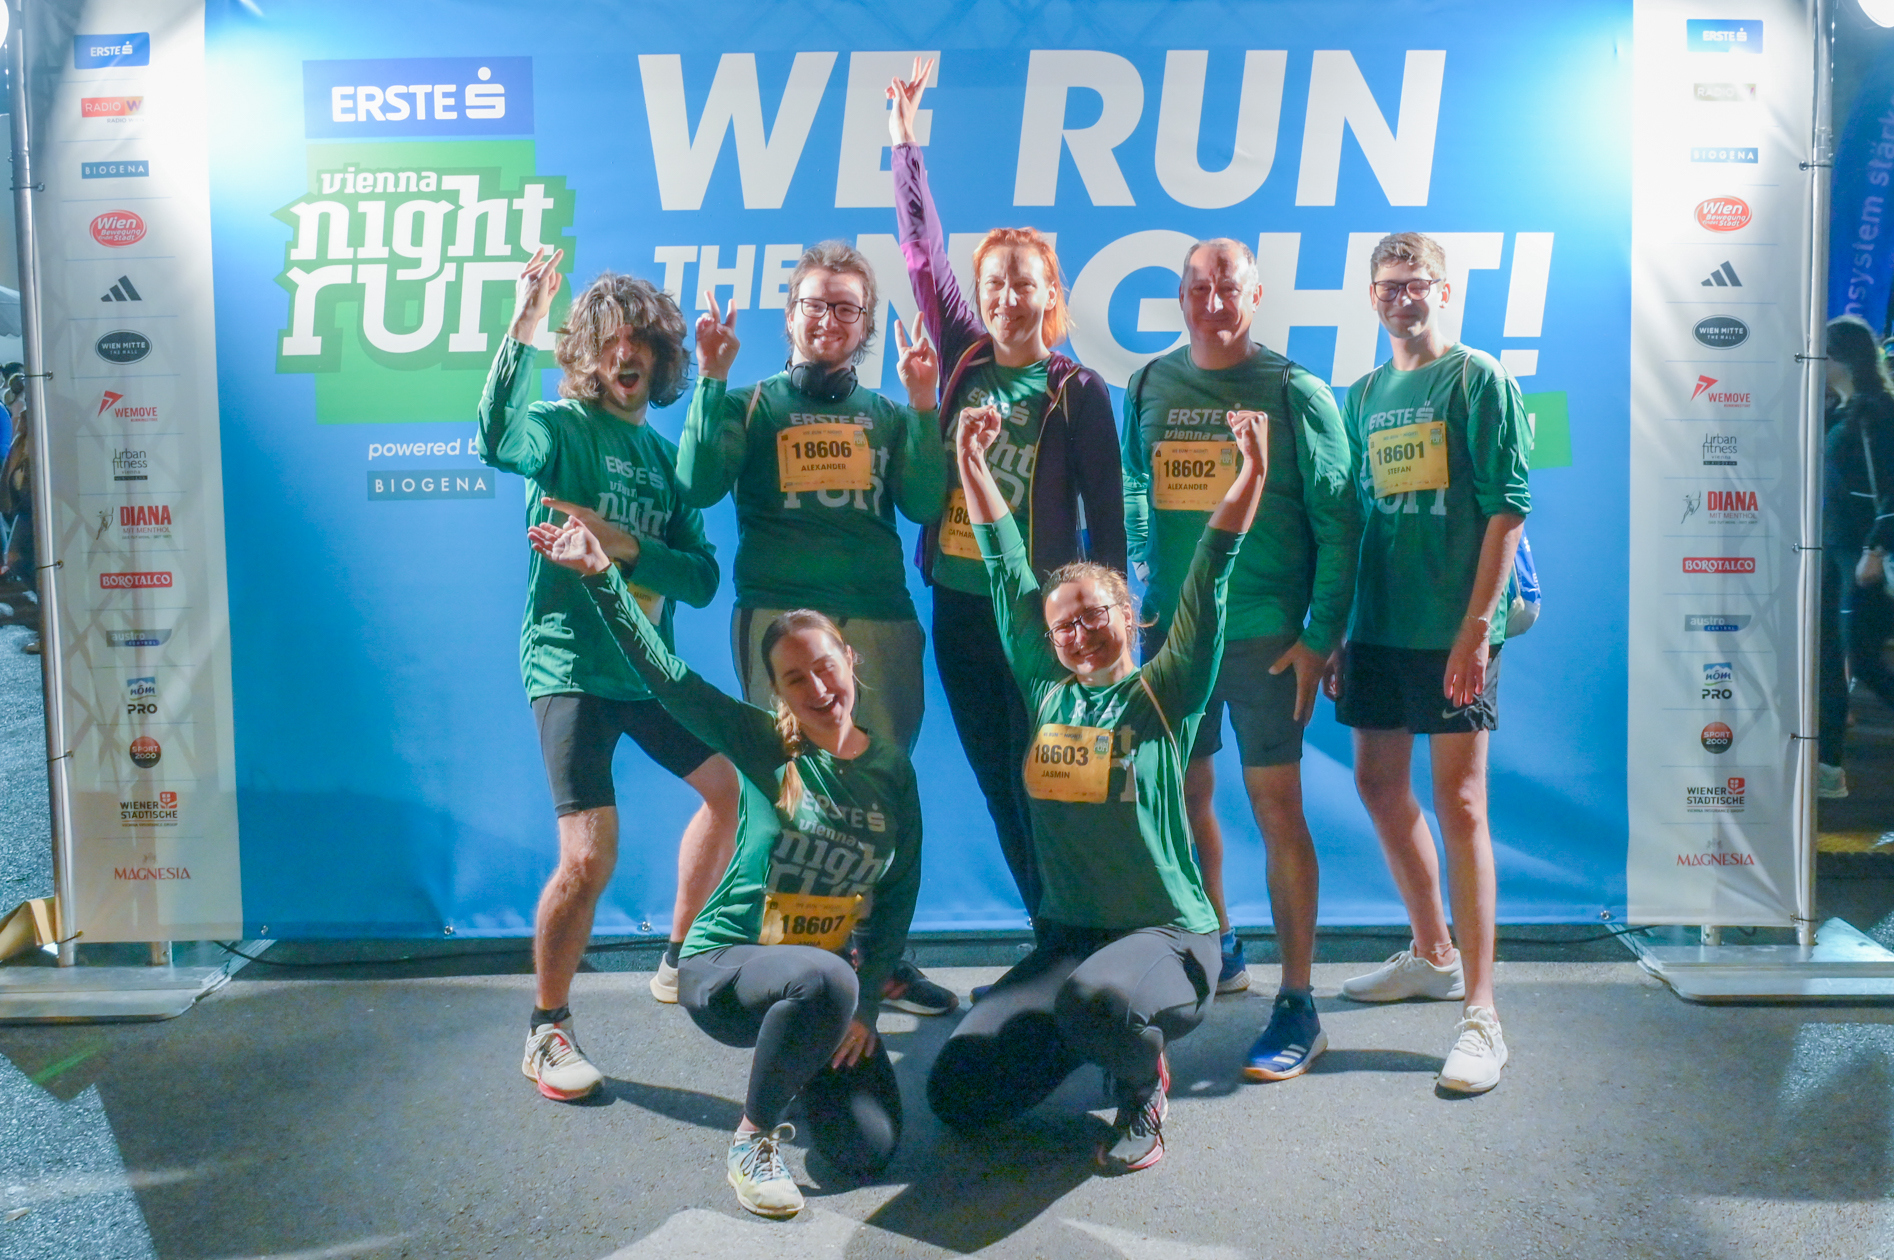 Die "APC Laufenten" beim Vienna Night Run